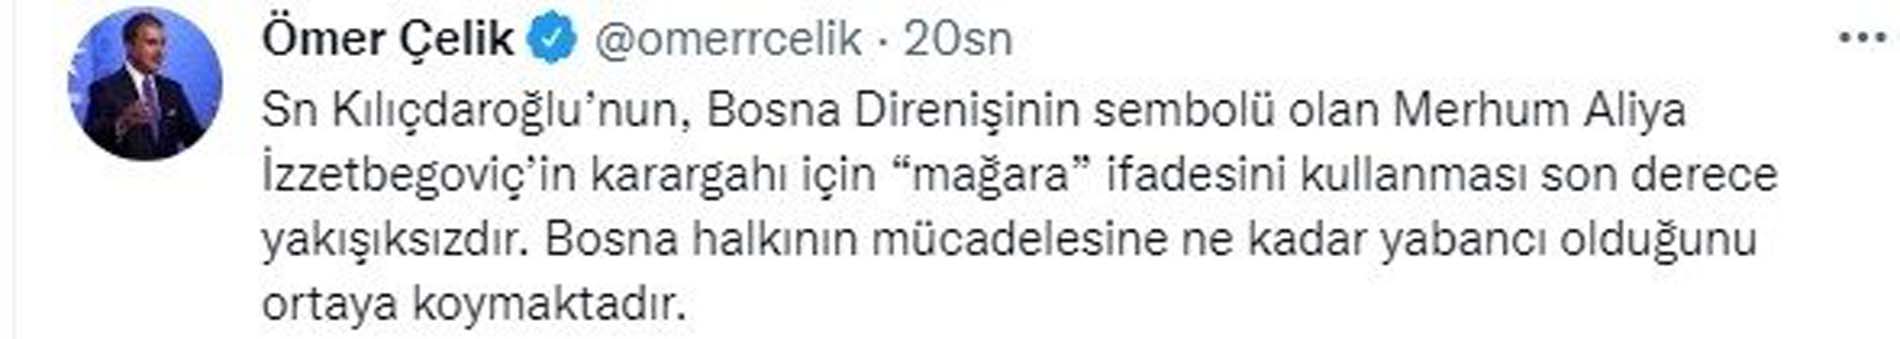 AK Parti Sözcüsü Ömer Çelik'ten Kılıçdaroğlu'na Aliya İzzetbegoviç tepkisi: Son derece yakışıksız...